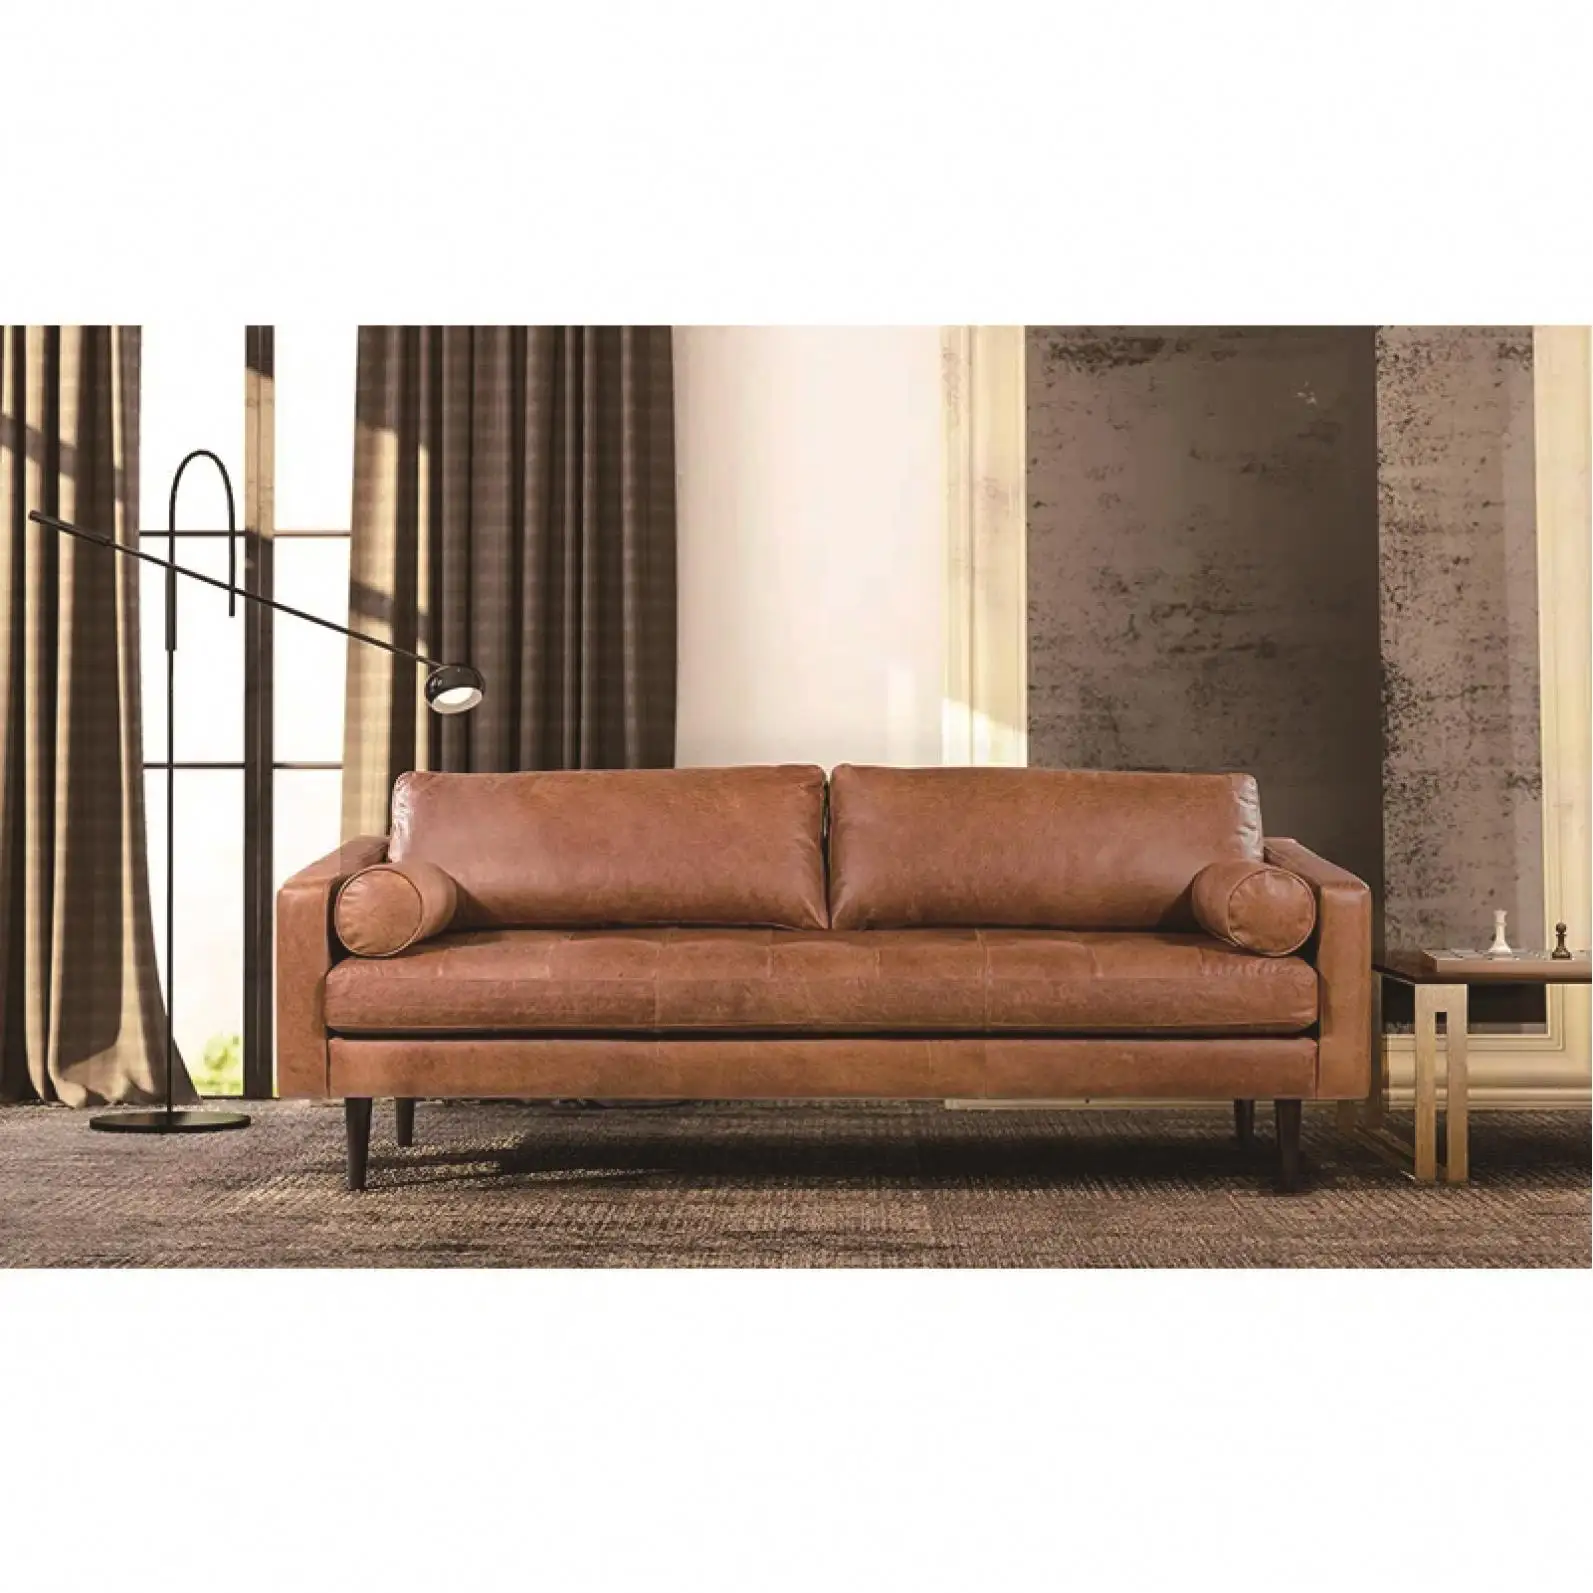 SANS Sofa standar kualitas tinggi Modern populer dan kain nyaman Sofa ruang tamu dengan jumlah pemuatan tinggi